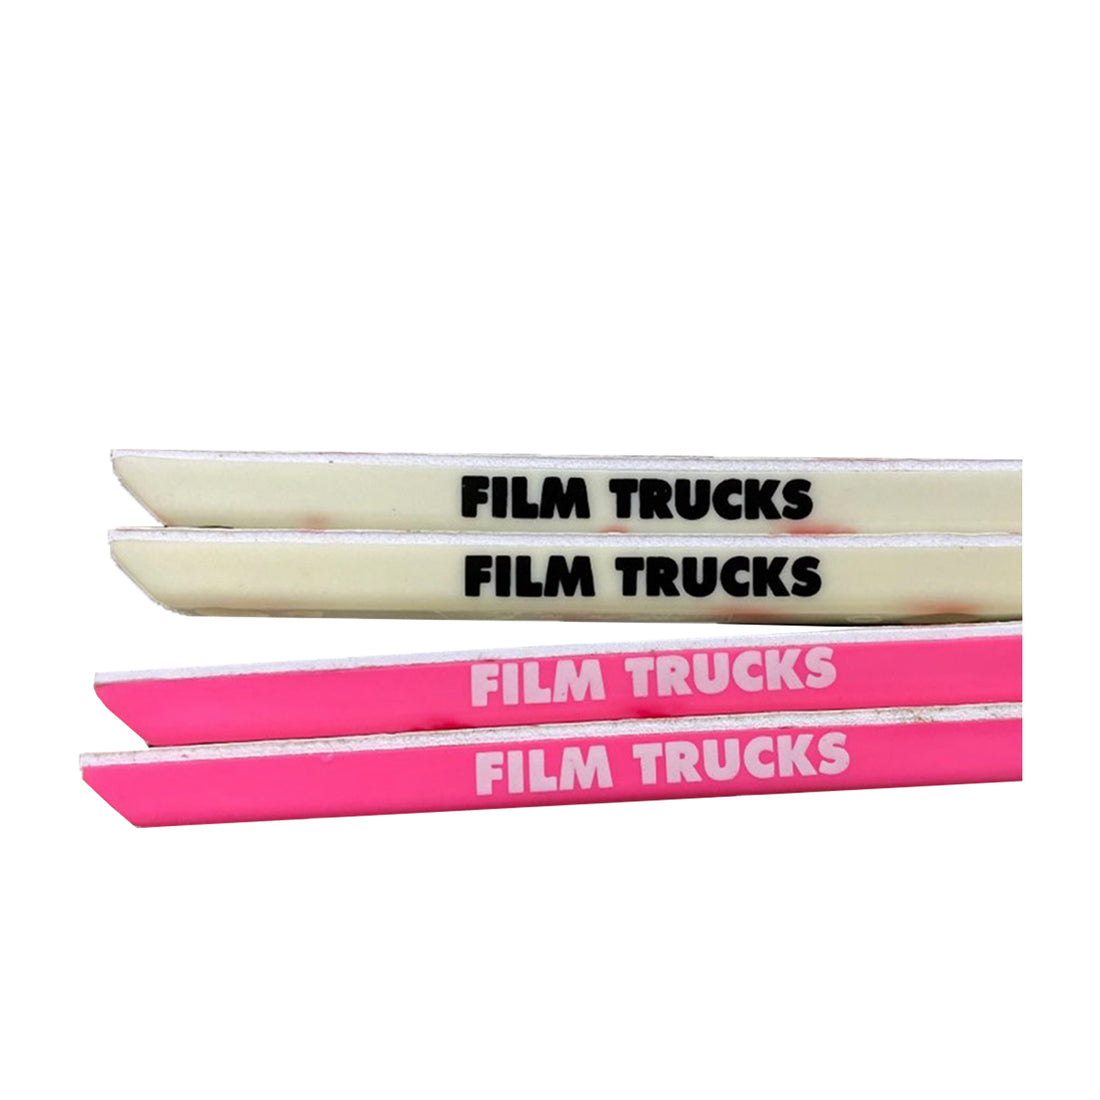 Film Trucks - Parking Block Rails - White